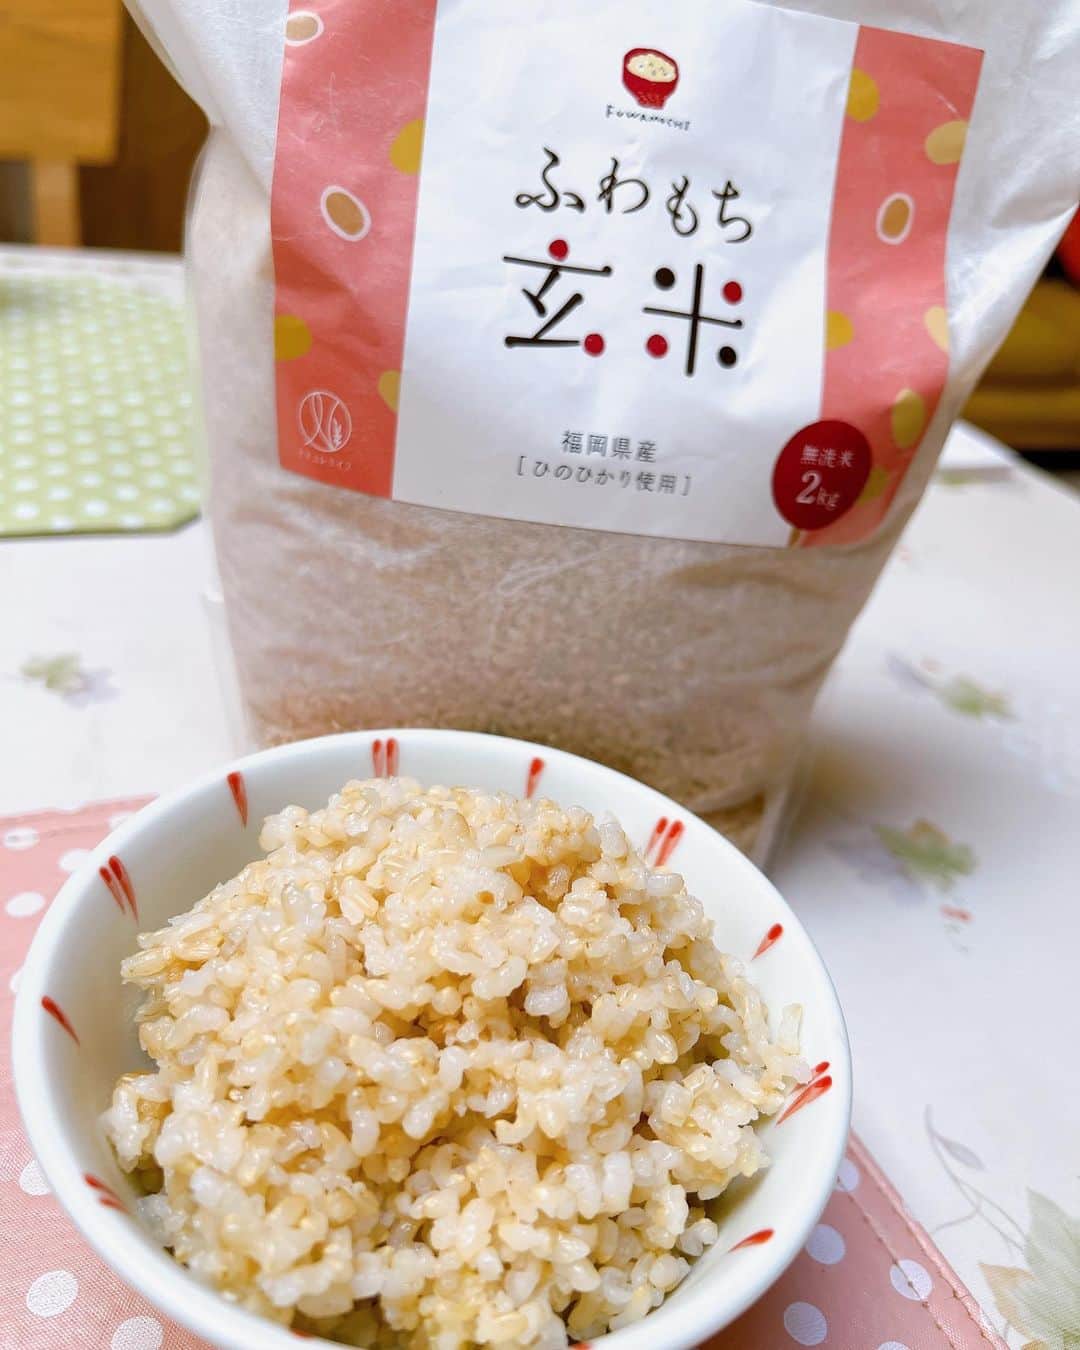 丹羽麻由美のインスタグラム：「🍚🍚🍚  福岡県産無洗米、ひのひかりの玄米、『ふわもち玄米』 @naturelife.channel   甘味料、着色料、保存料、香料、酸化防止剤、不使用で、残留農薬不検出。  もちもちの玄米で、無洗米で炊きやすく、とても食べやすくて美味しかったです✨  身体に優しい食べ物で、健康目指します☺️  ありがとうございました✨  ナチュレライフさんでは、ふわもち玄米のほかにも自然の恵みを美味しくいただける商品がたくさんあります✨  気になった方はぜひチェック↓ してください☺️ @naturelife.channel   #ナチュレライフのふわもち玄米 #ふわもち玄米 #玄米 #無洗米 #ひのひかり #おいしい玄米 #食べやすい玄米 #残留農薬不検出 #アレンジ無限大 #玄米レシピ #玄米ごはん生活 #やさしいご飯 #ナチュレライフ #PR」